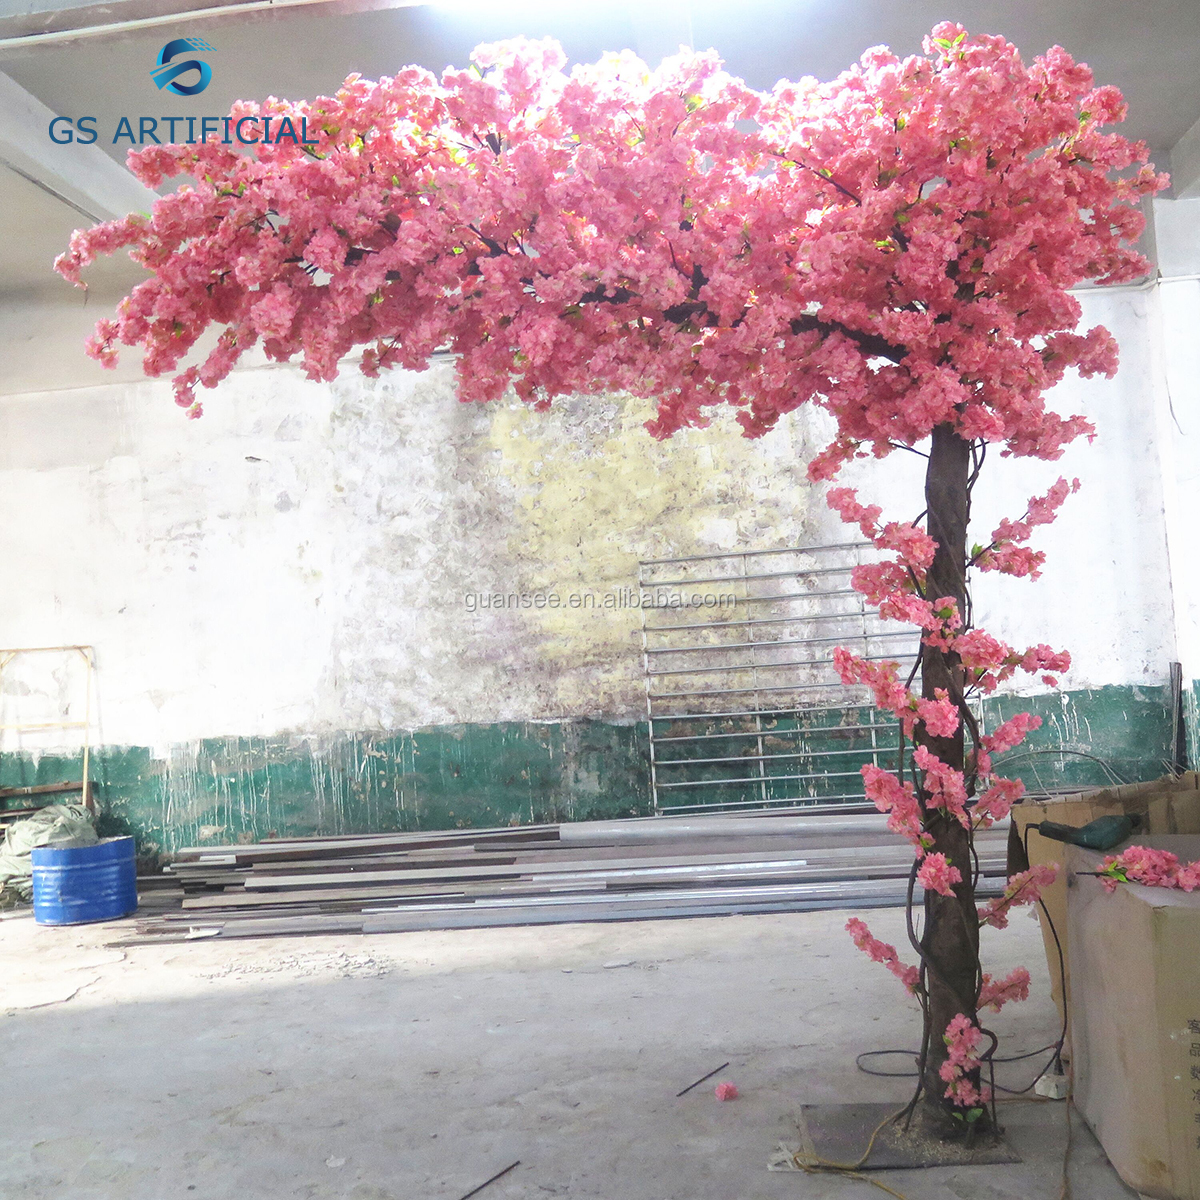  Vysoce kvalitní hotový prodej Artificial Cherry Blossom Tree Tree Arch pro dekoraci 